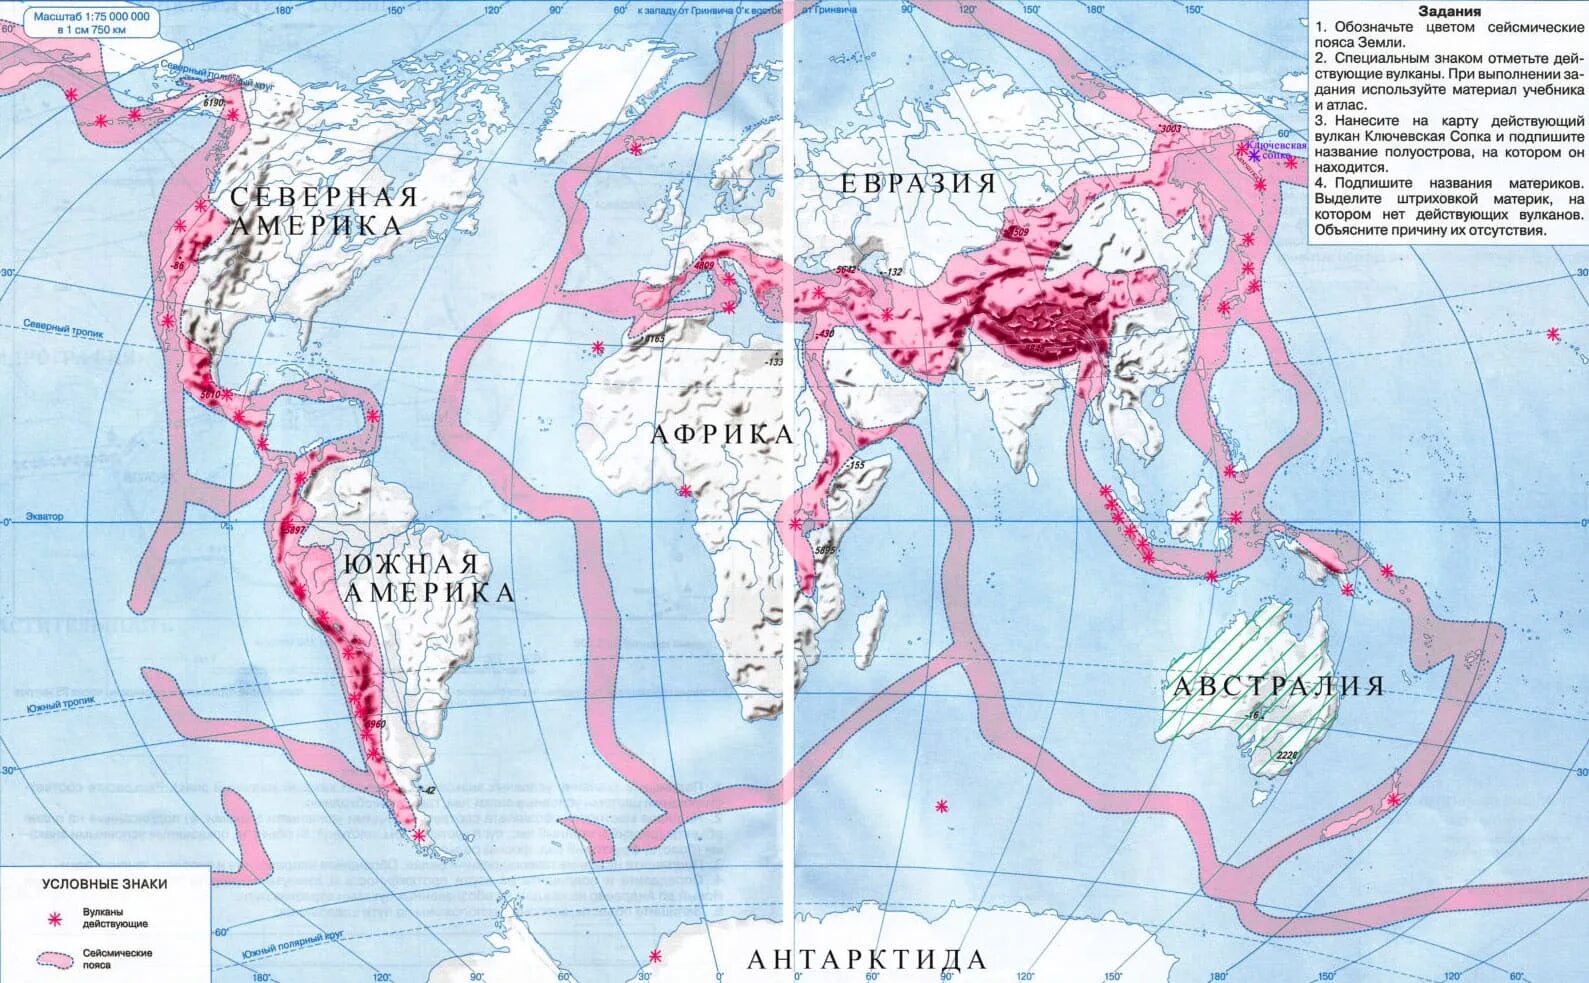 Зоны землетрясений и вулканов. География 5 класс атлас и контурные карты ответы стр 14-15.